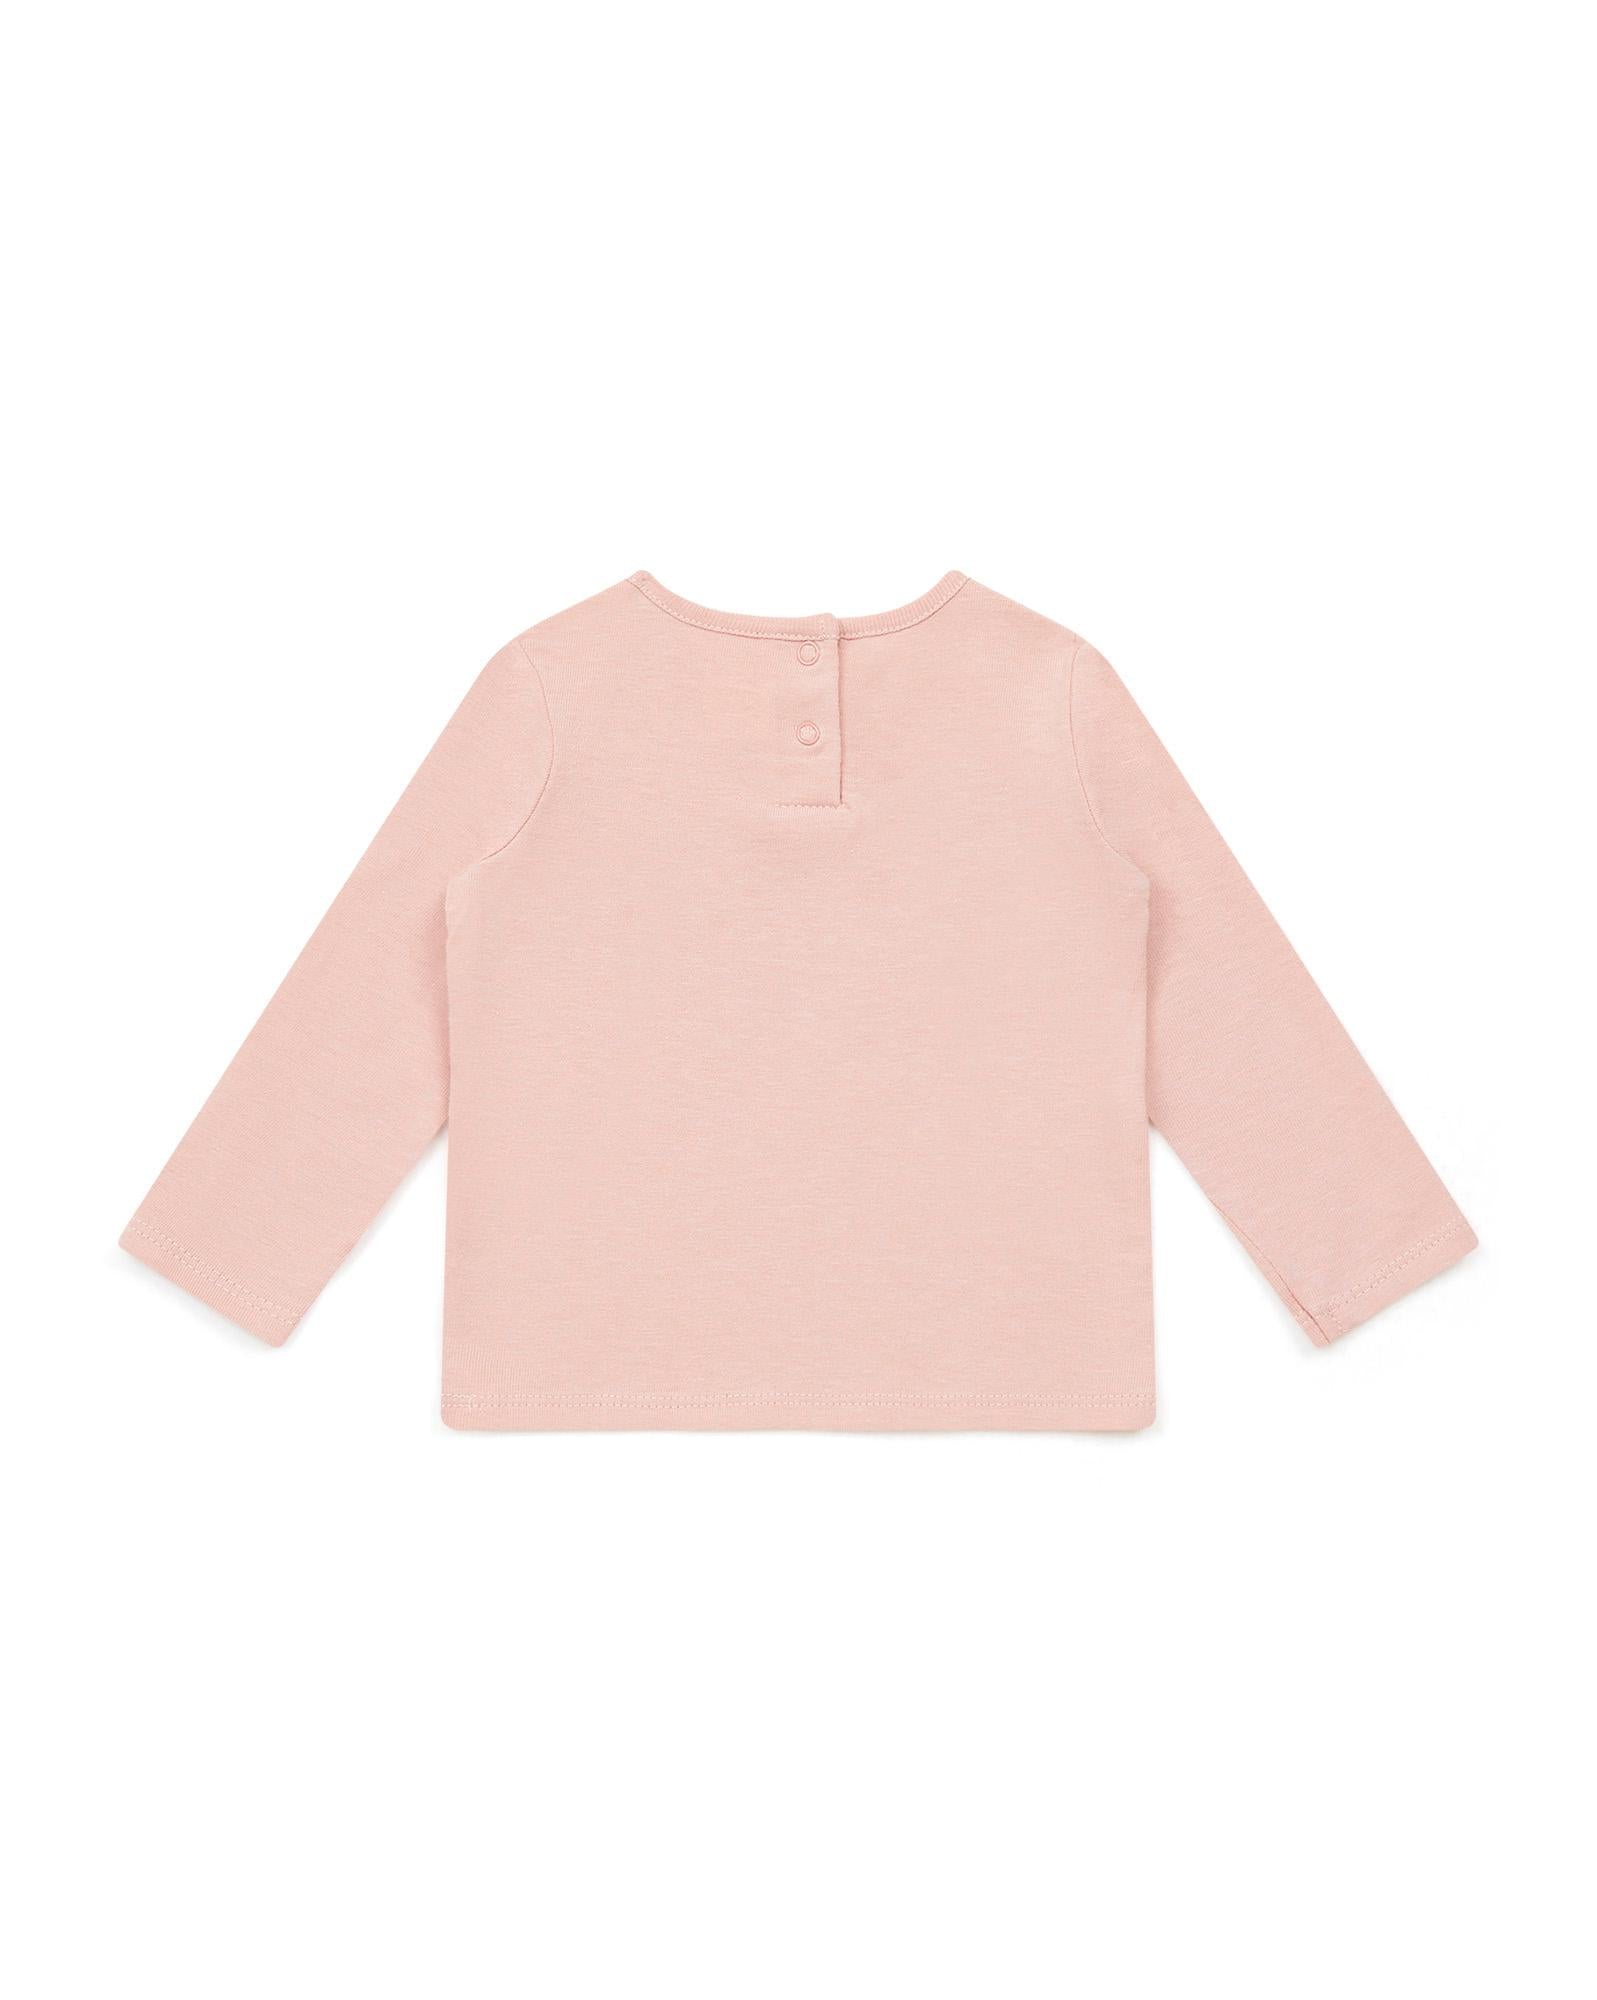 Tee-shirt ML Cœur rose Bébé en 100% coton biologique